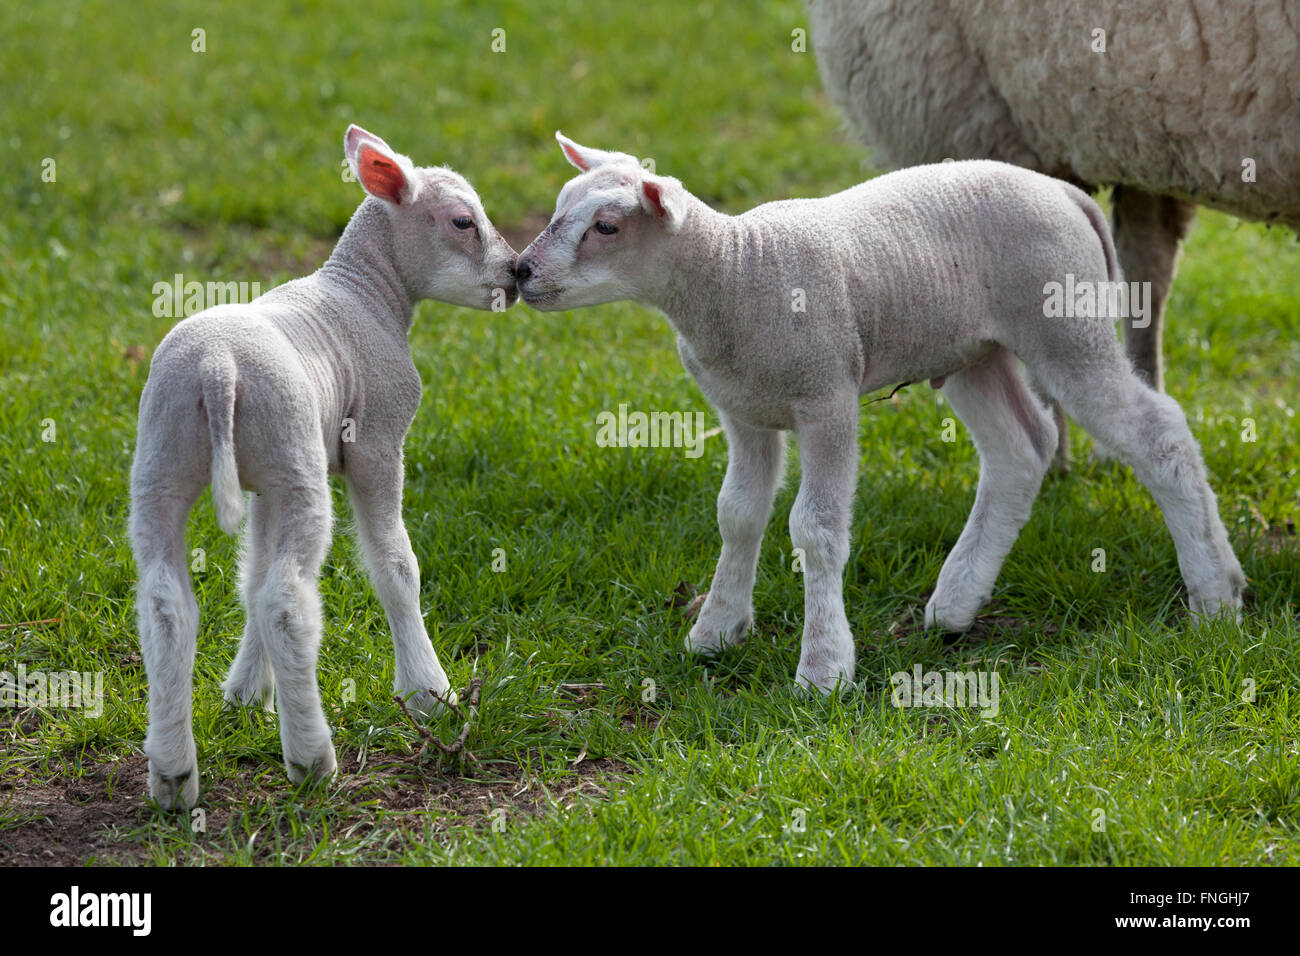 Newborn lambs in the meadow Stock Photo